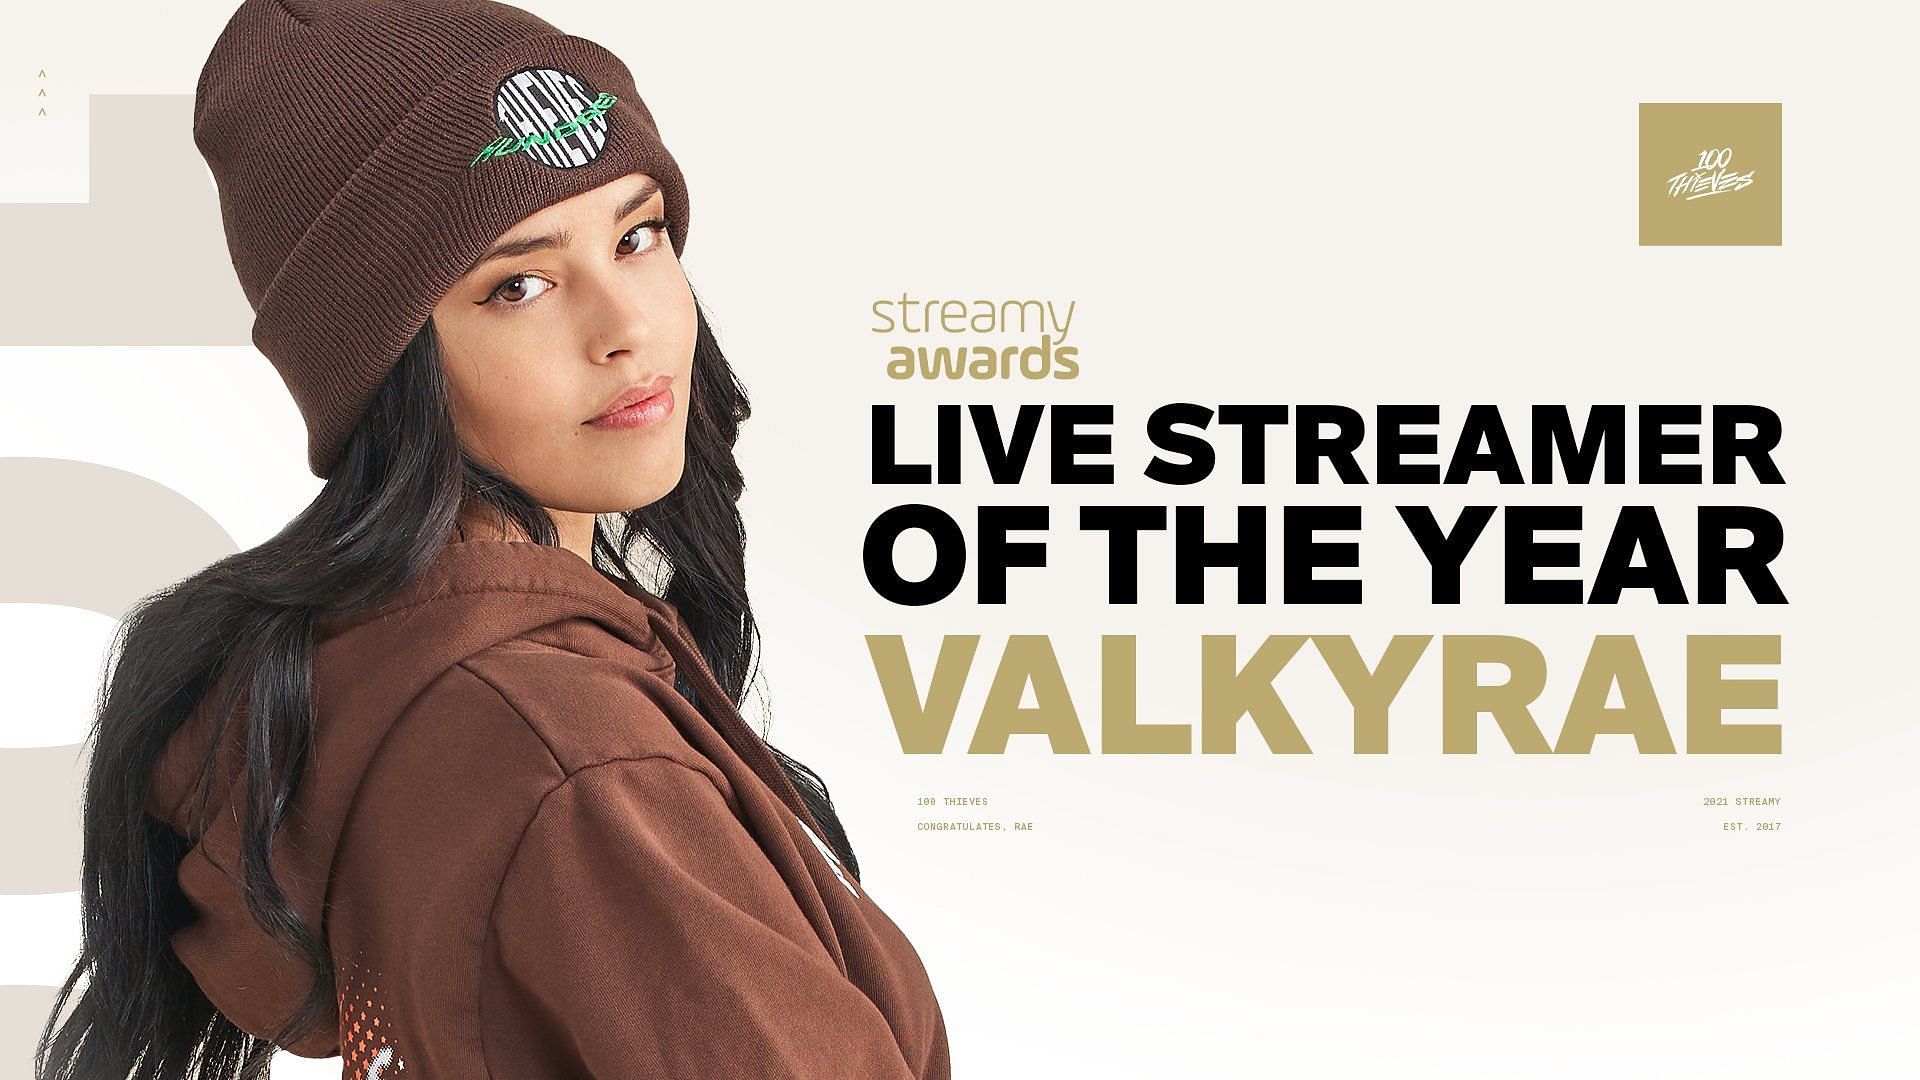 Valkyrae wins Live Streamer Award at the YouTube Streamy Awards ahead of NICKMERCS and Shroud (Image via 100 Thieves)